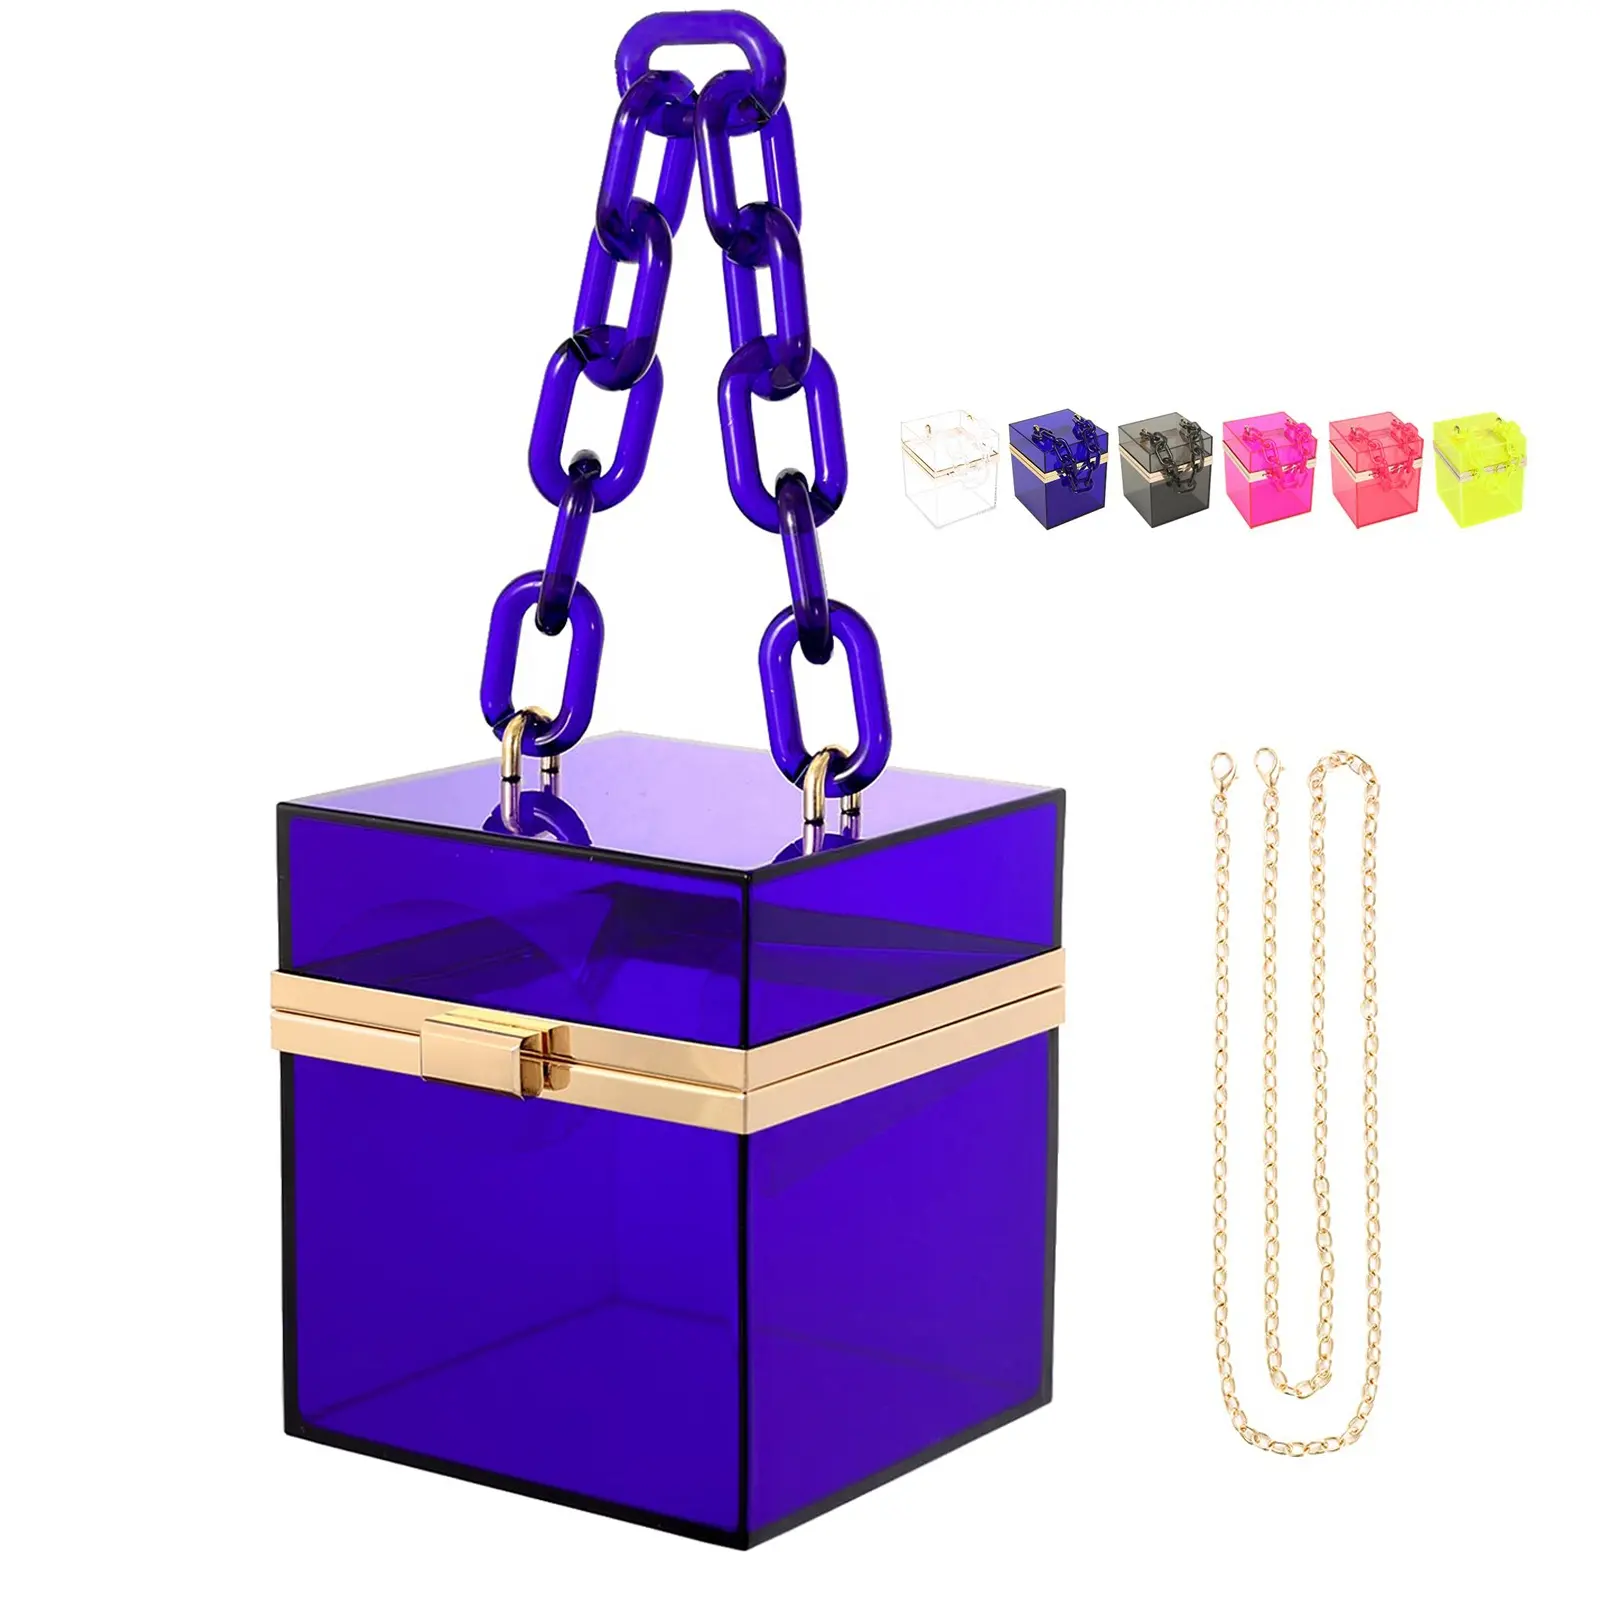 Quadratische Box Handtasche Transparente Abend taschen Niedliche klare Acryl Kunststoff Neon Hard Frame Party Clutch Geldbörse mit Goldkette riemen